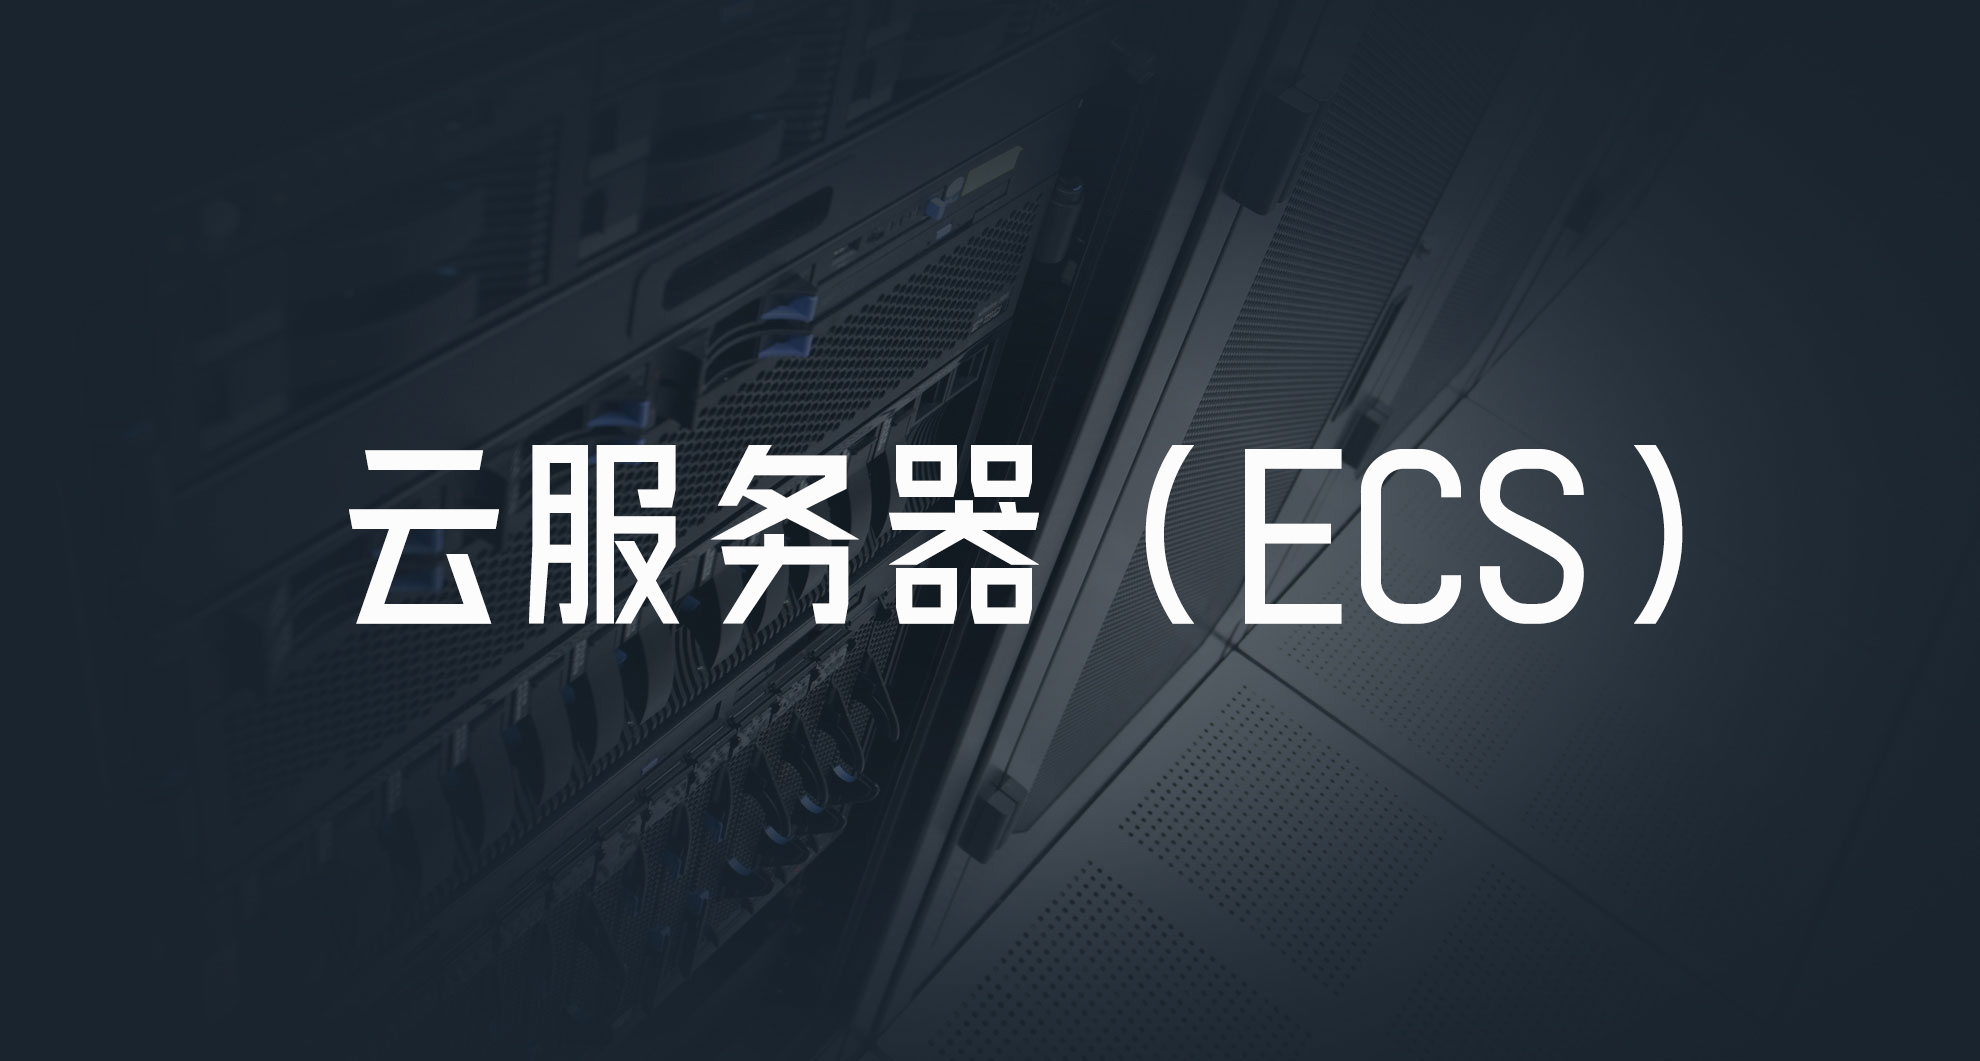 ECS是什么意思？